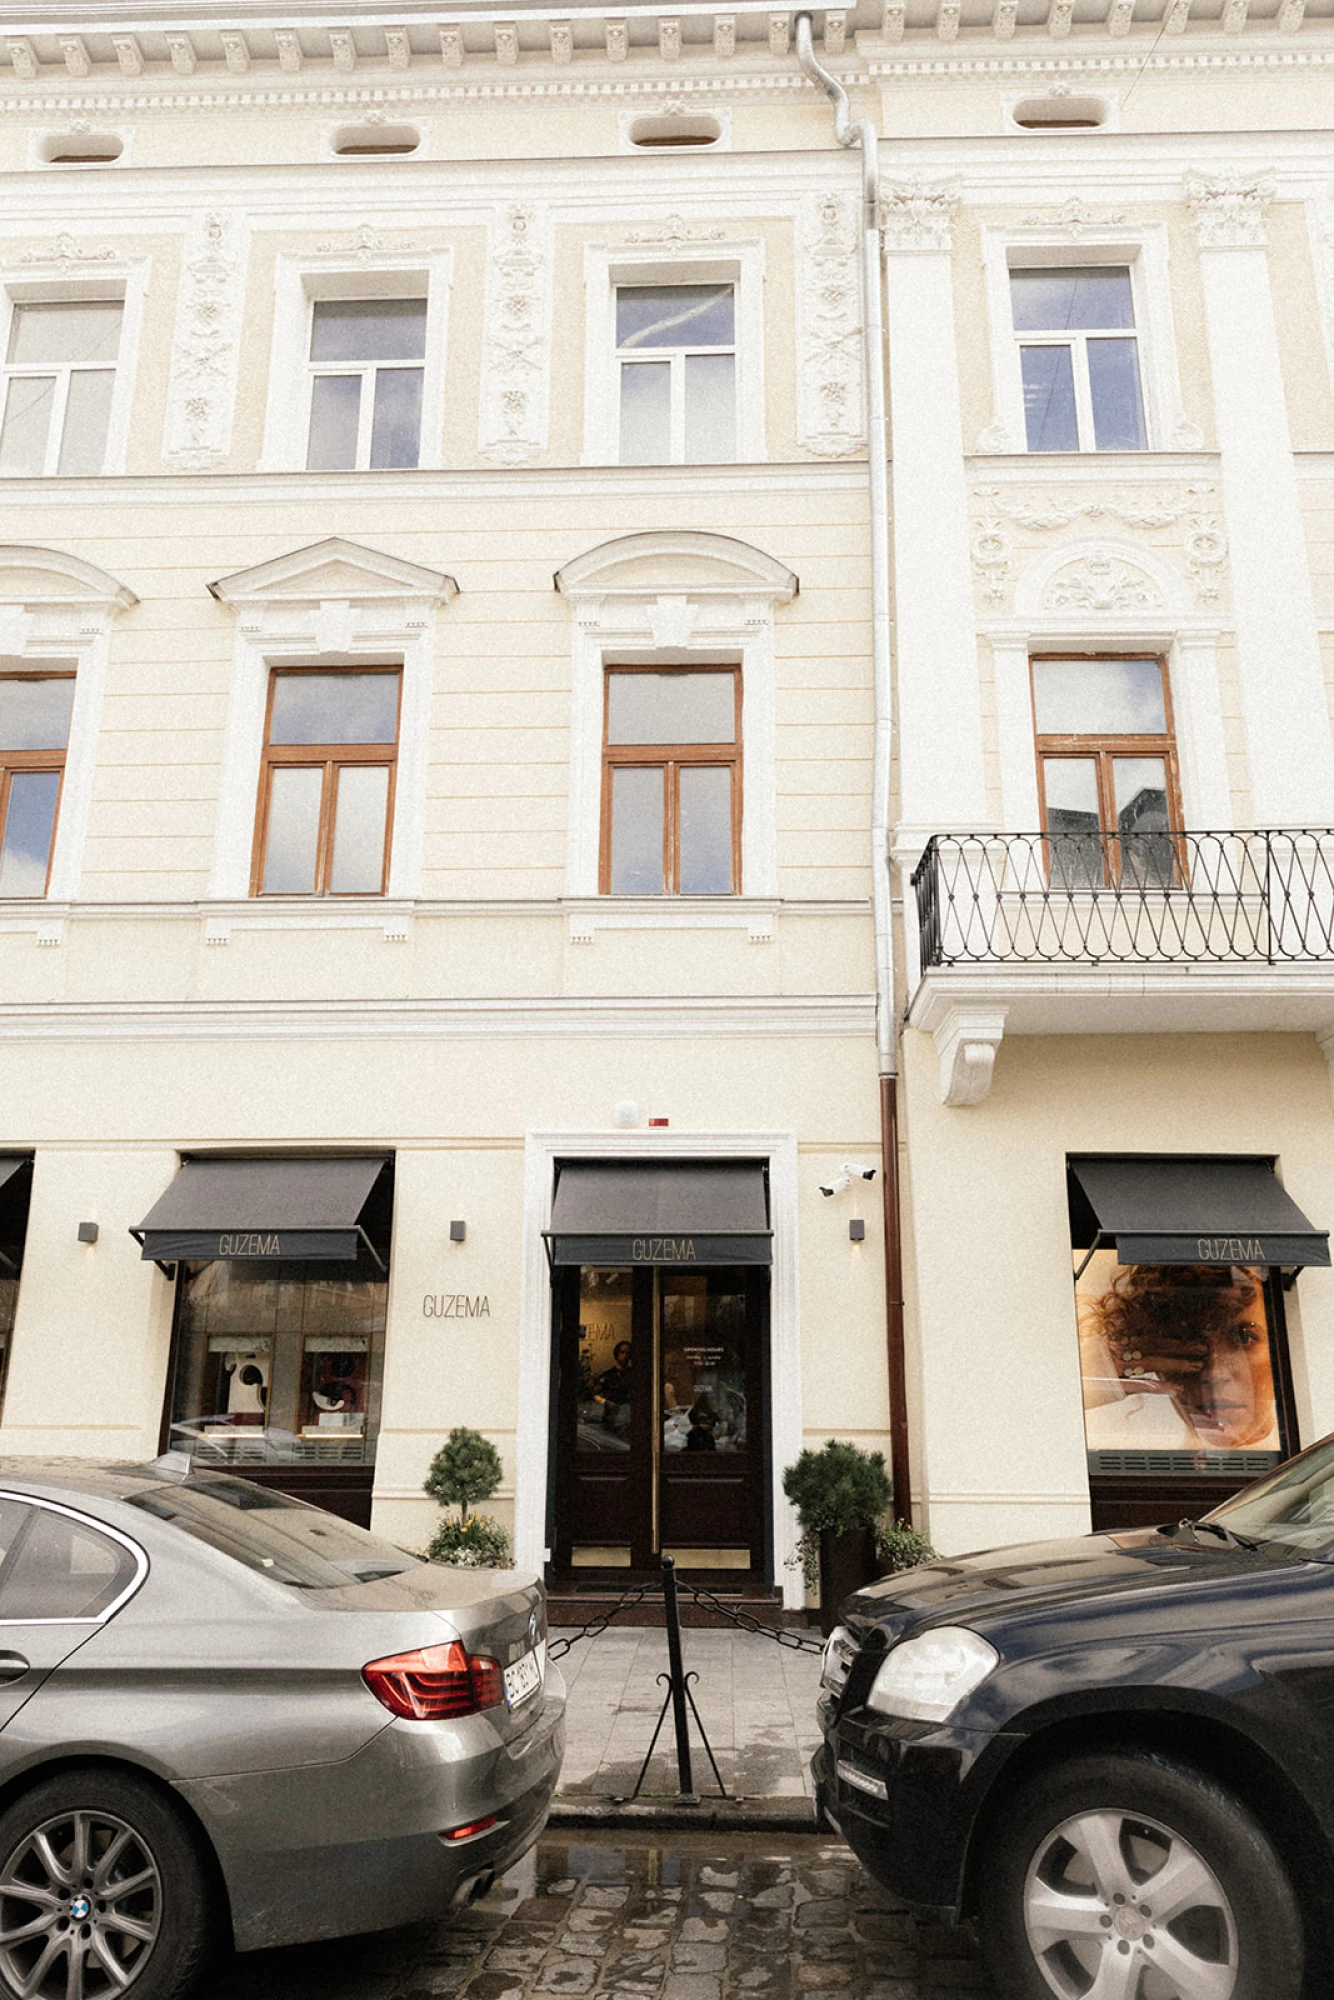 Guzema Fine Jewelry відкрили бутик в центрі Львова